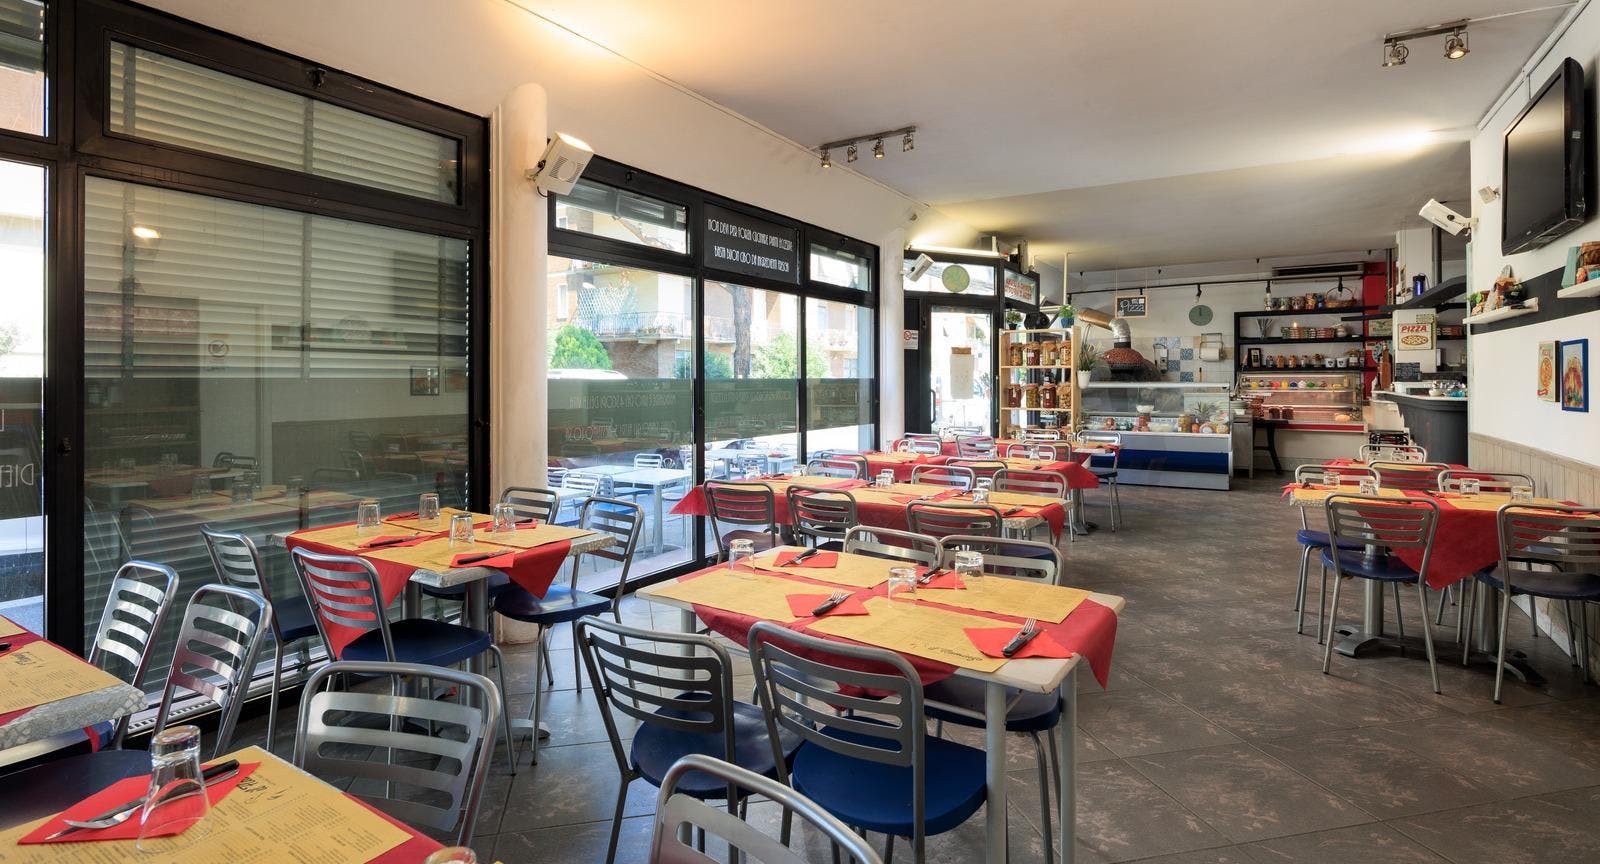 Photo of restaurant RISTORANTE PIZZERIA IL FLAMINGO in Isolotto / Legnaia, Florence